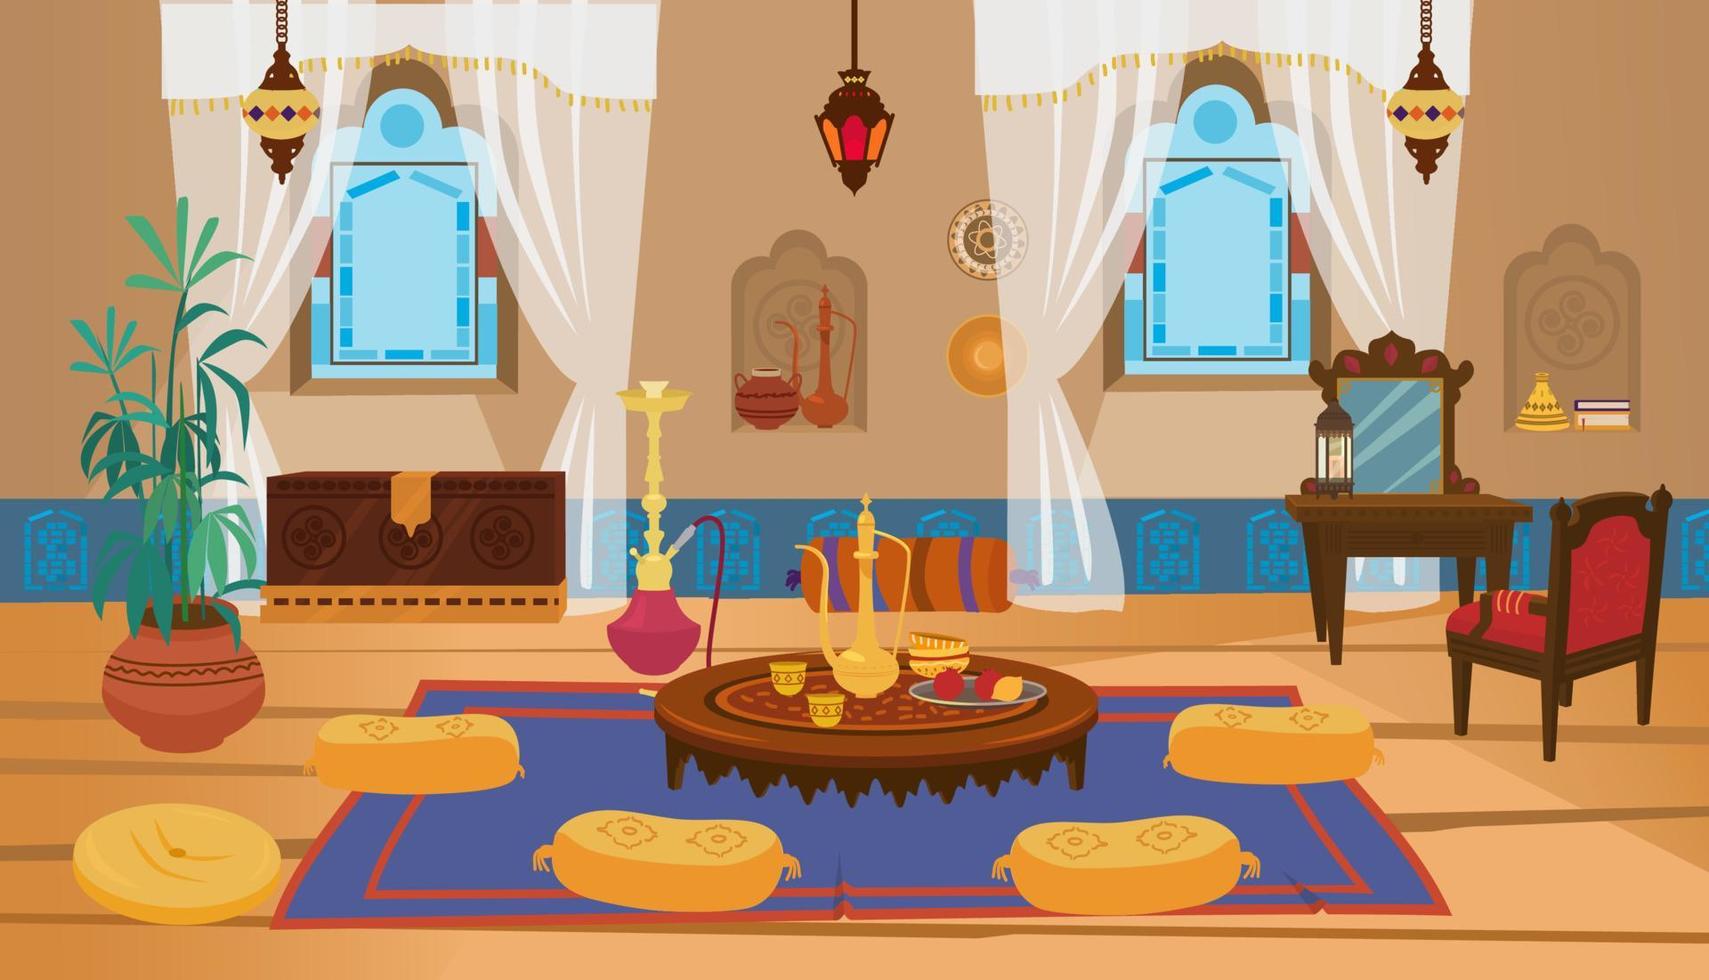 intérieur de salon moyen-oriental avec meubles en bois et éléments de décoration. table basse ronde avec théière et oreillers, coiffeuse avec chaise, lanternes avec vitraux. vecteur de dessin animé.